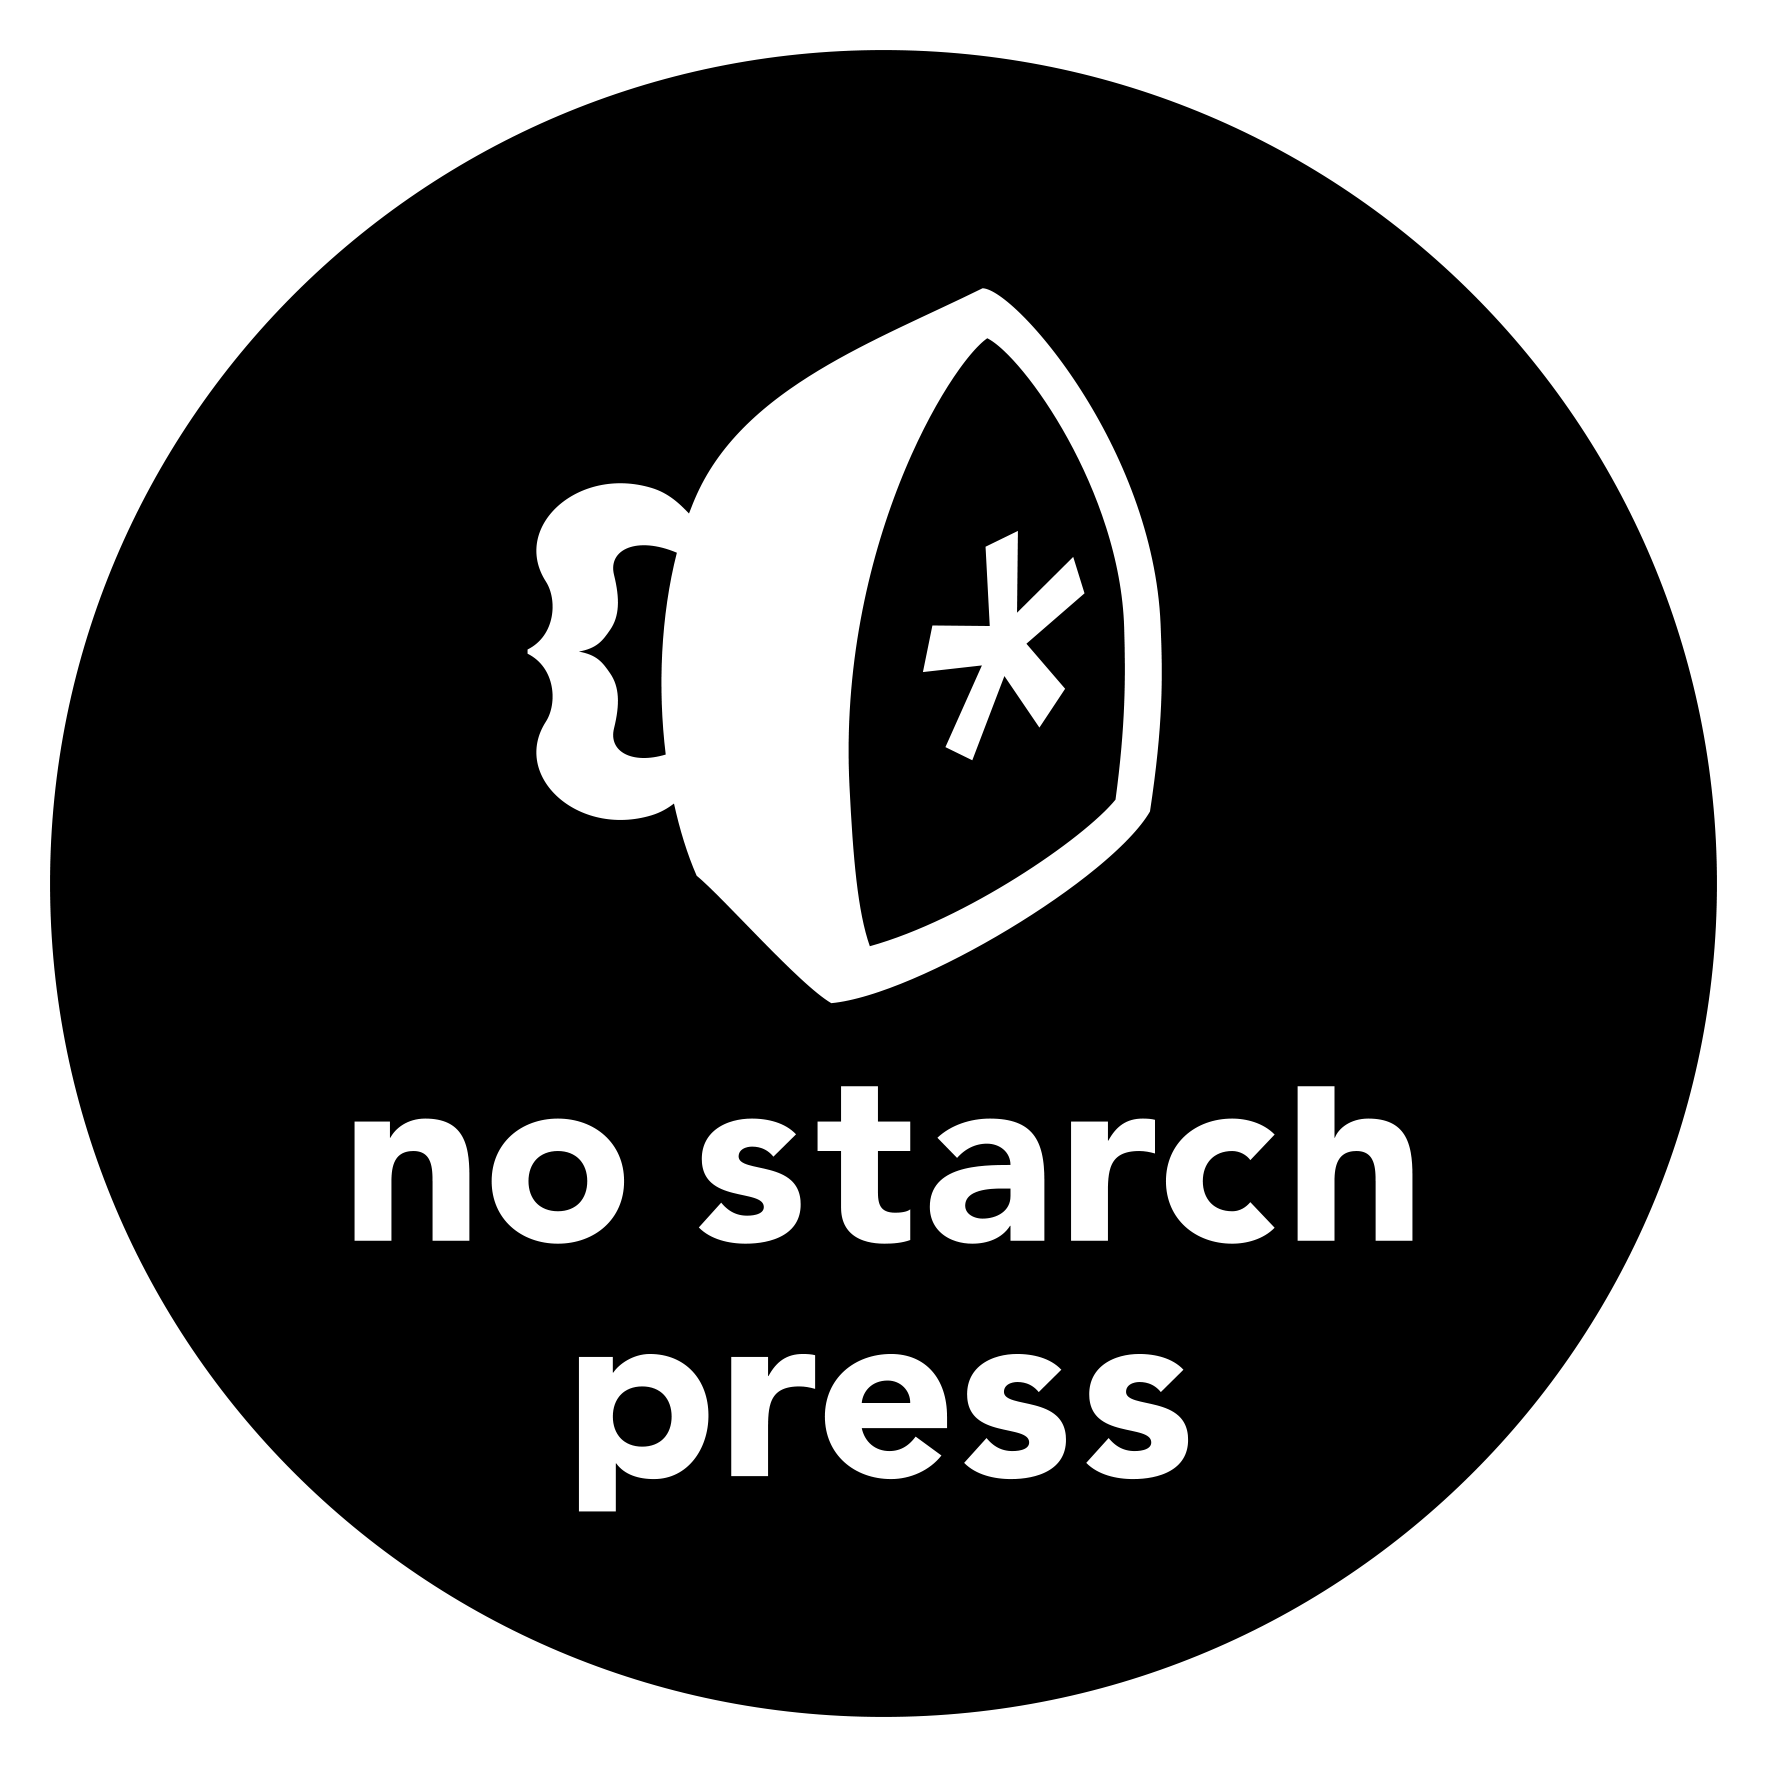 NoStarch logo.